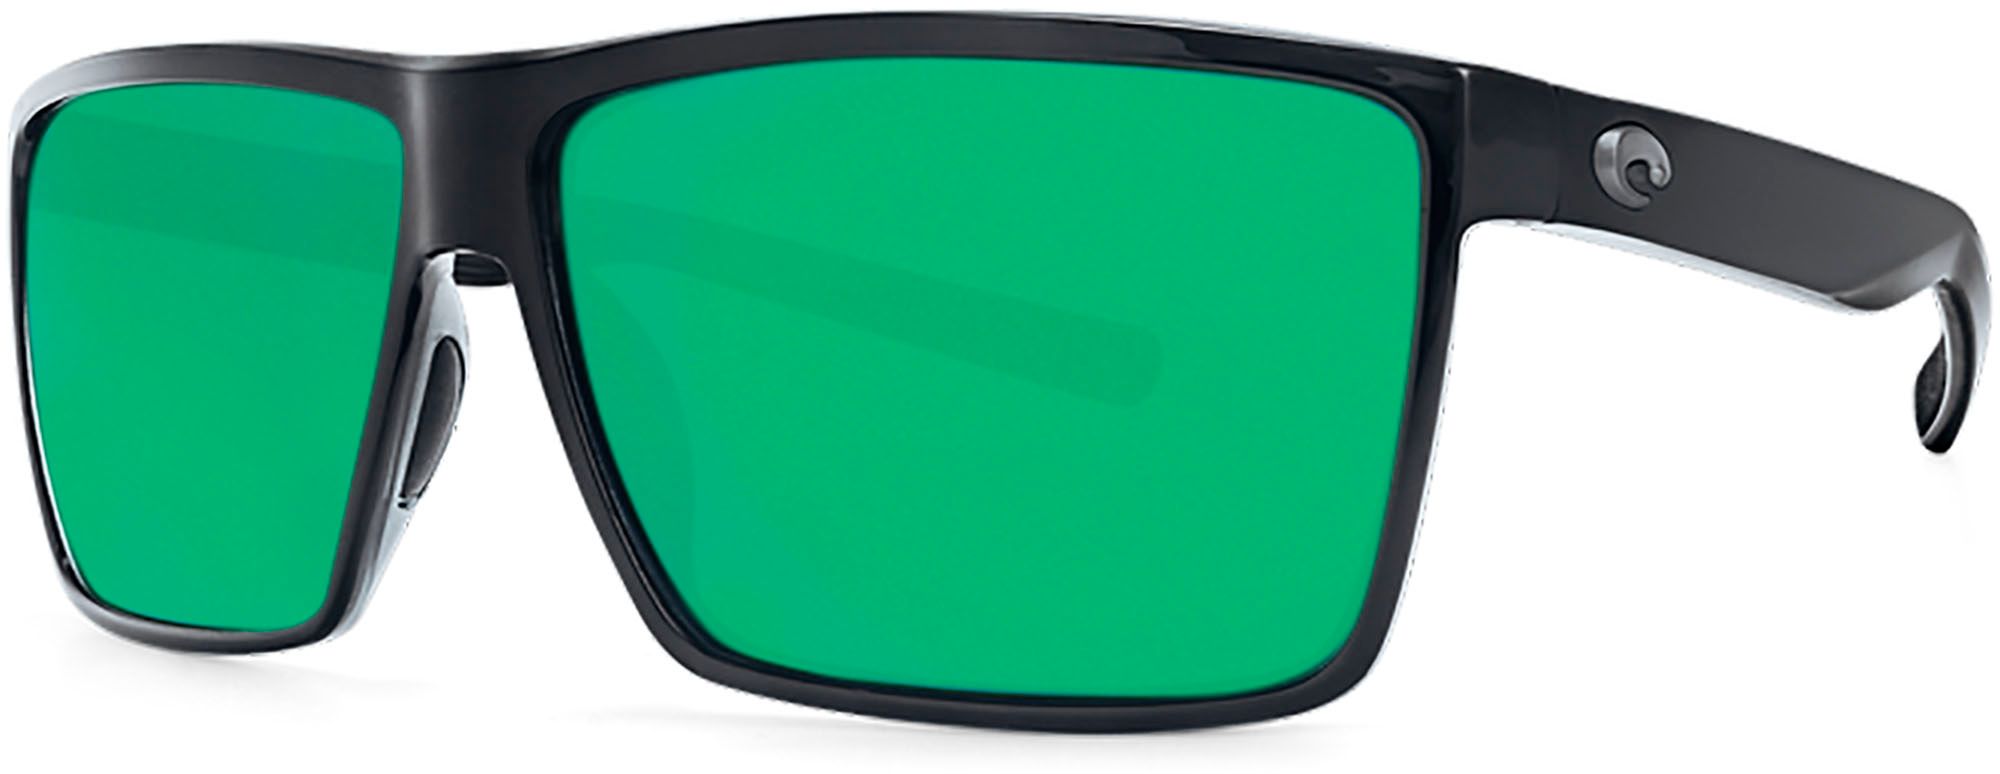 Photos - Sunglasses Costa Del Mar Rincon 580P Polarized , Men's, Shiny Black/Green M 